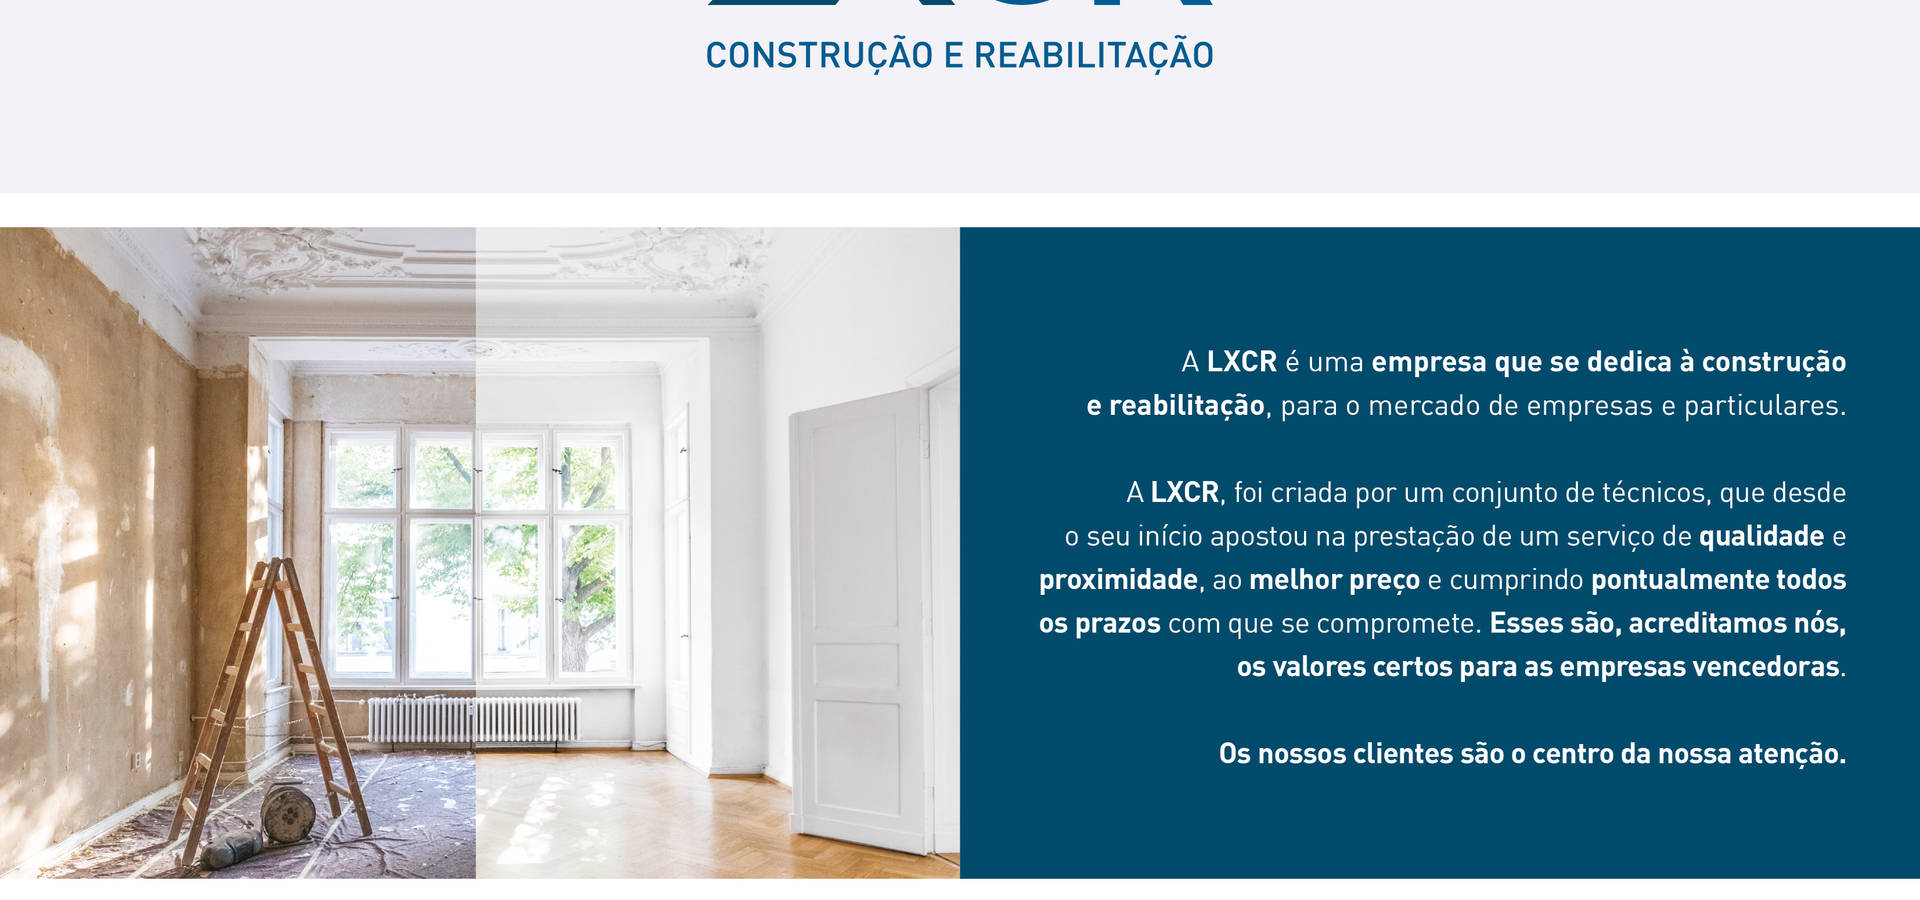 LXCR-REABILITAÇÃO e CONSTRUÇÃO, LDA